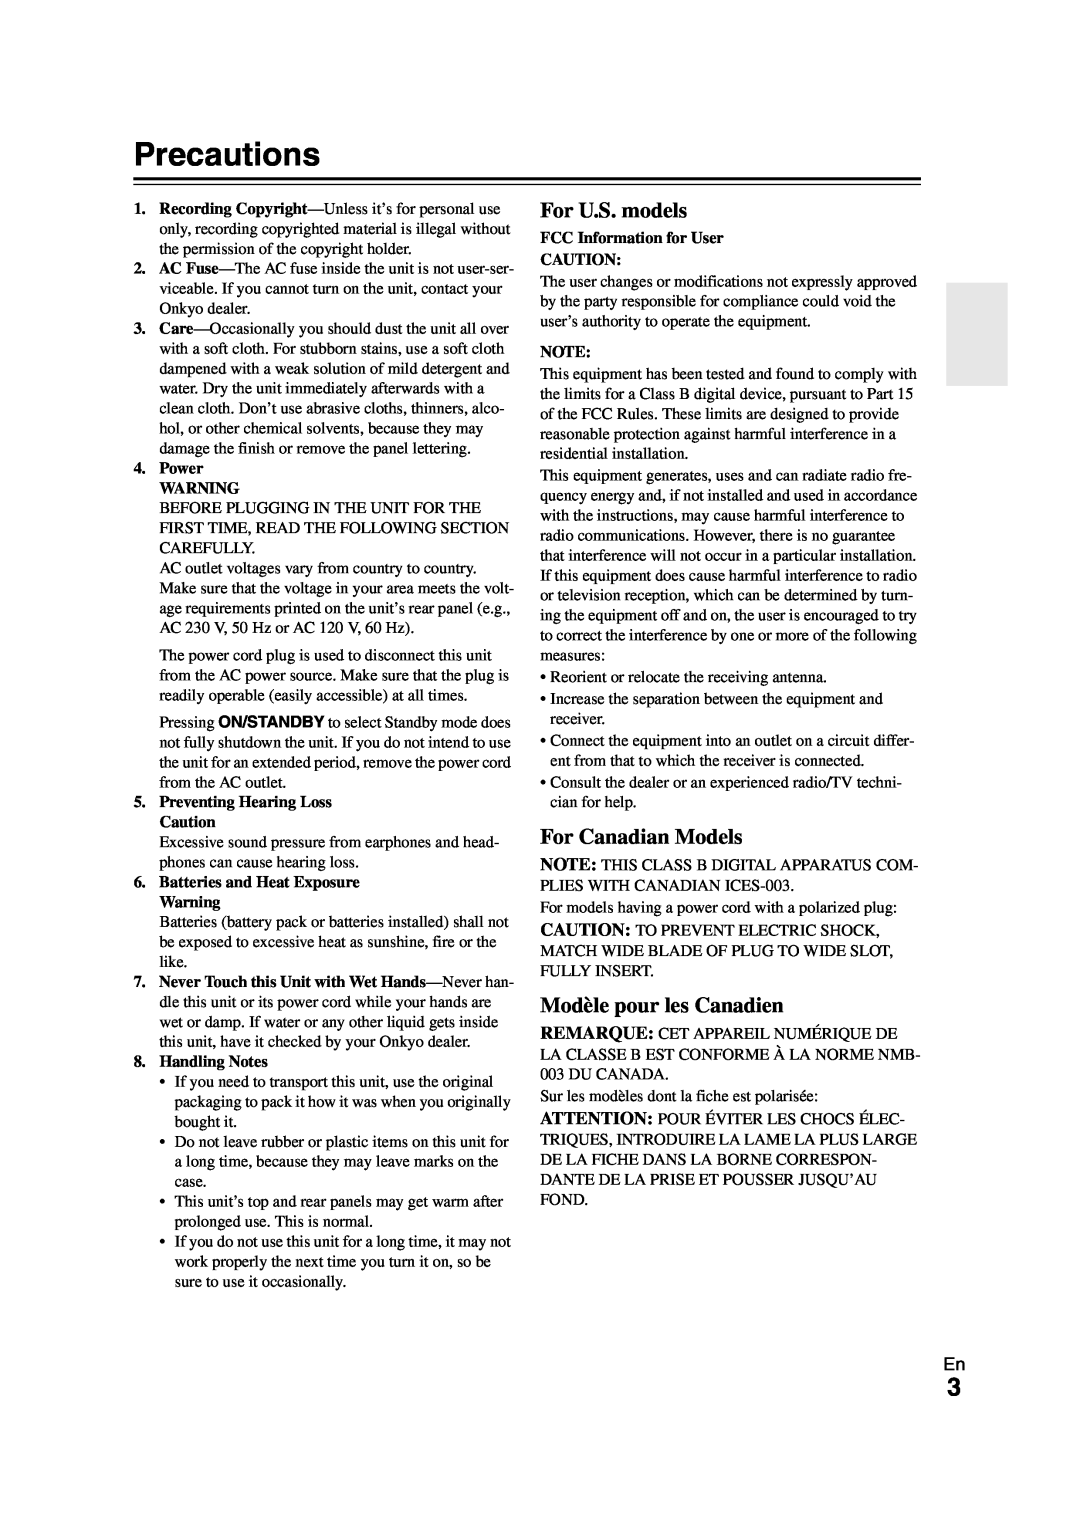 Onkyo SR308 instruction manual Precautions, For U.S. models, For Canadian Models, Modèle pour les Canadien 